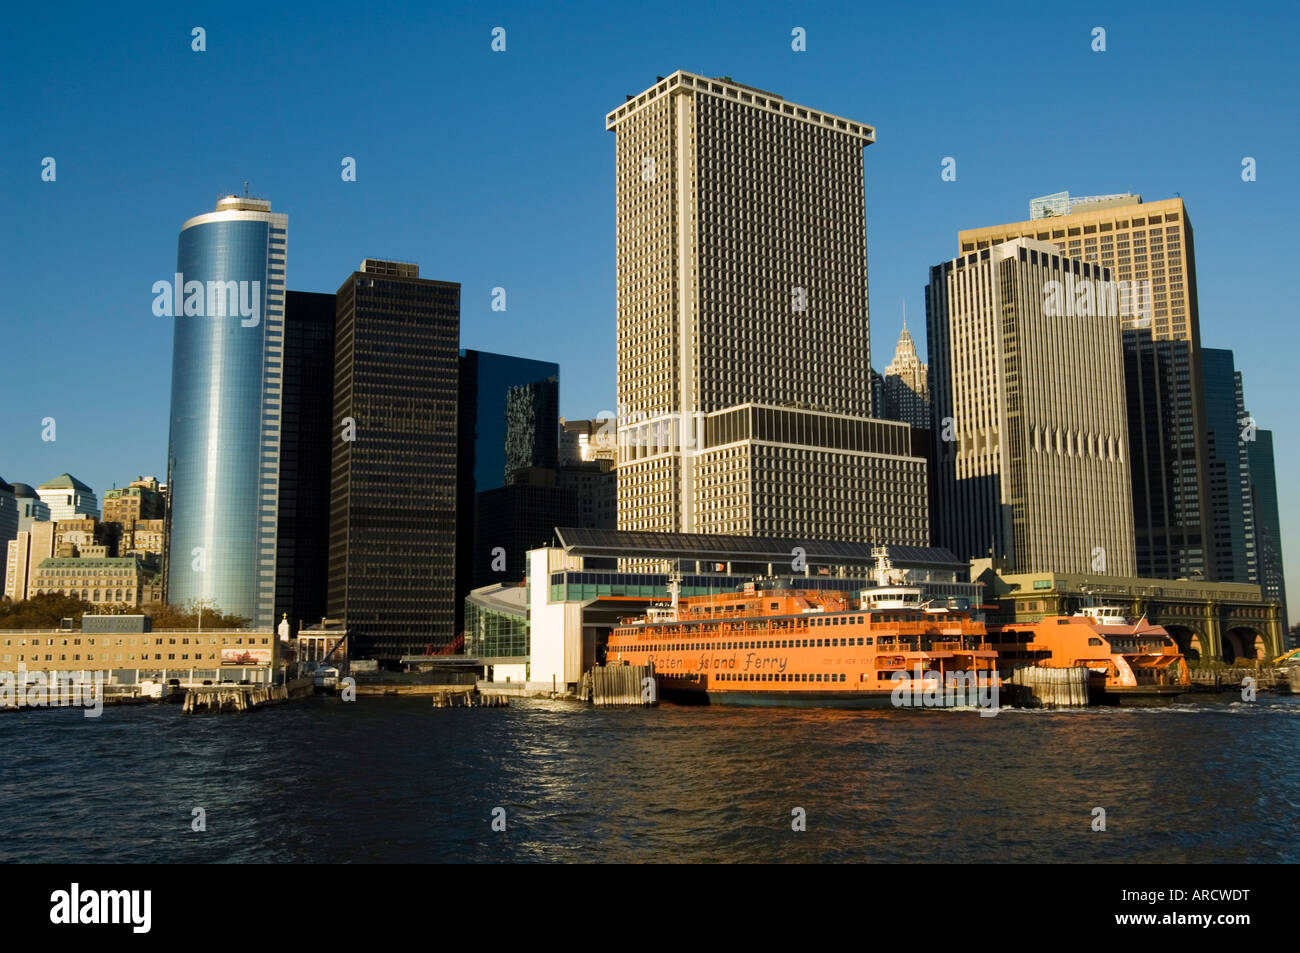 Staten Island Ferry, quartier des affaires, le Lower Manhattan, New York City, New York, États-Unis d'Amérique, Amérique du Nord Banque D'Images